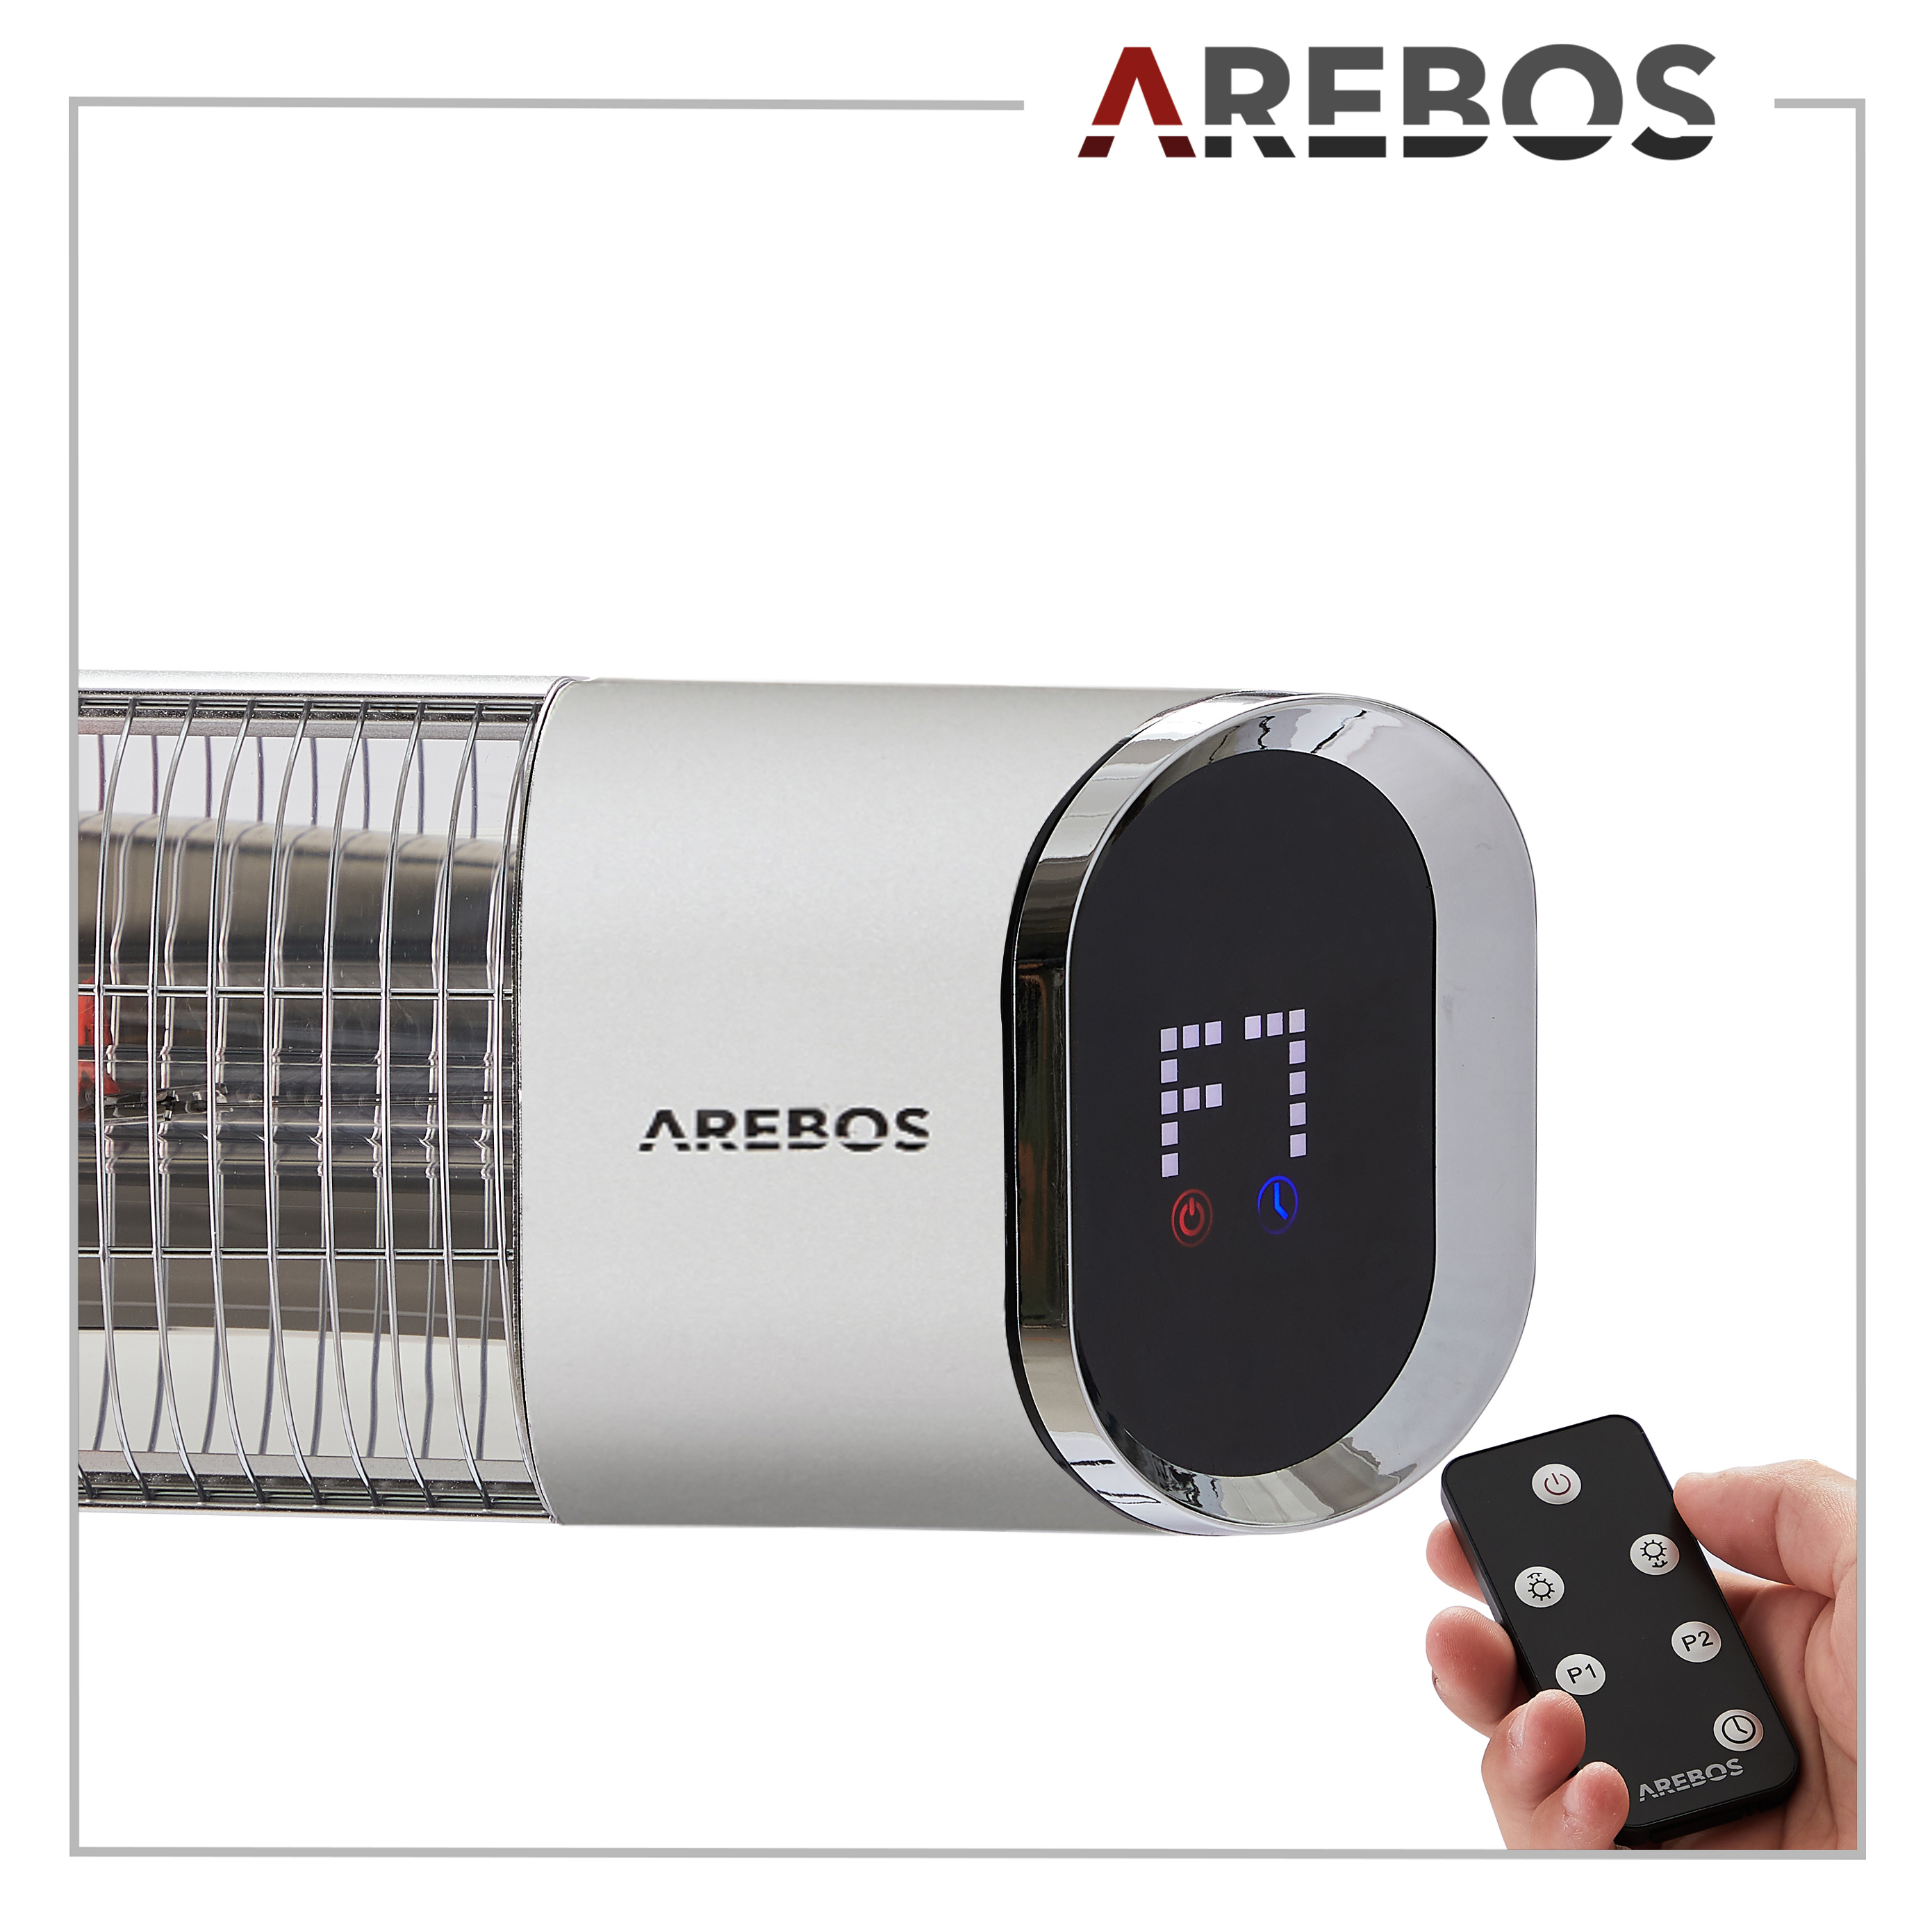 Arebos Chauffage radiant infrarouge, Radiateur électrique